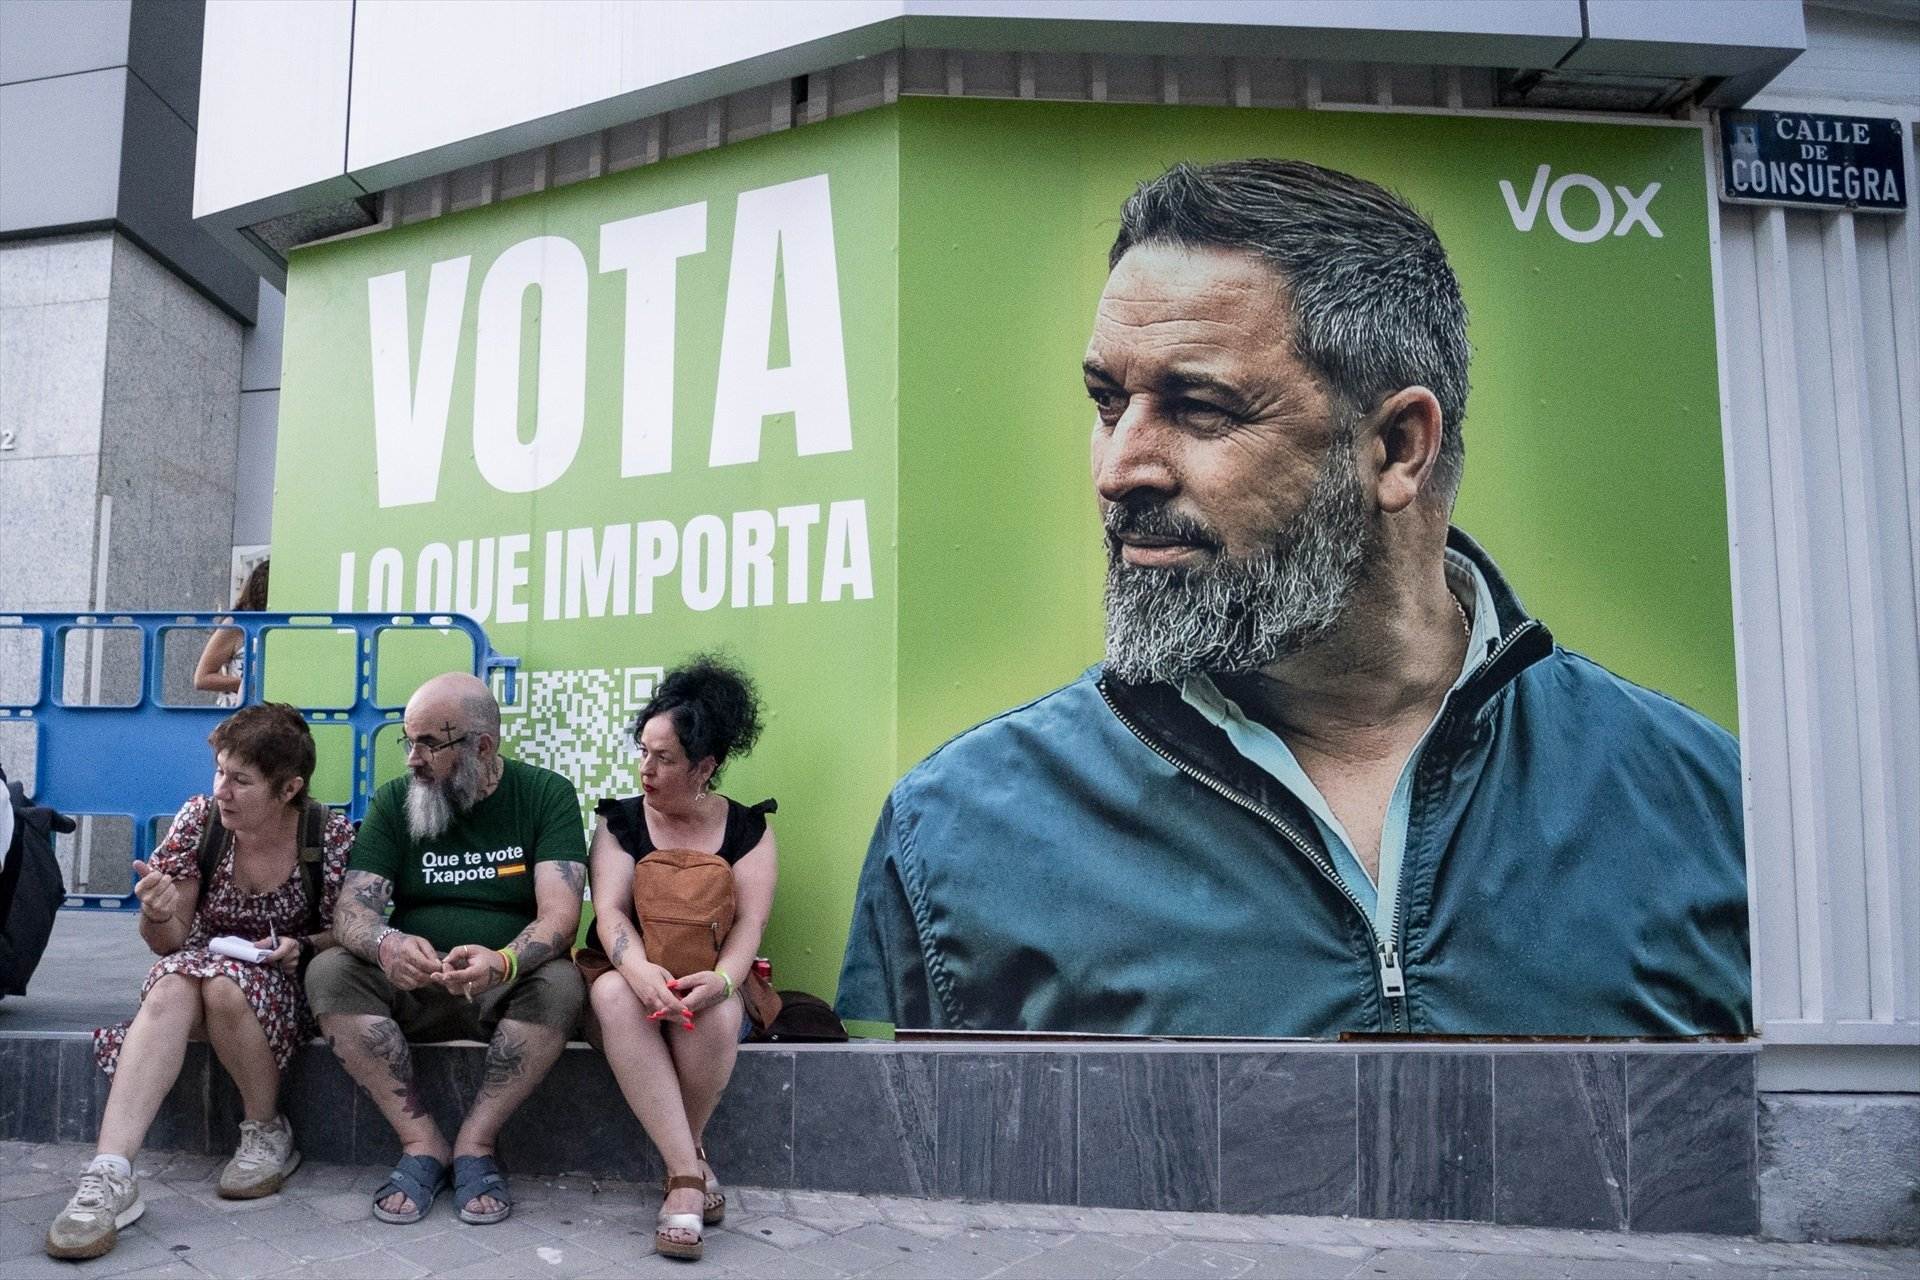 La Junta Electoral expedienta Vox per difondre propaganda abans de l'inici de campanya